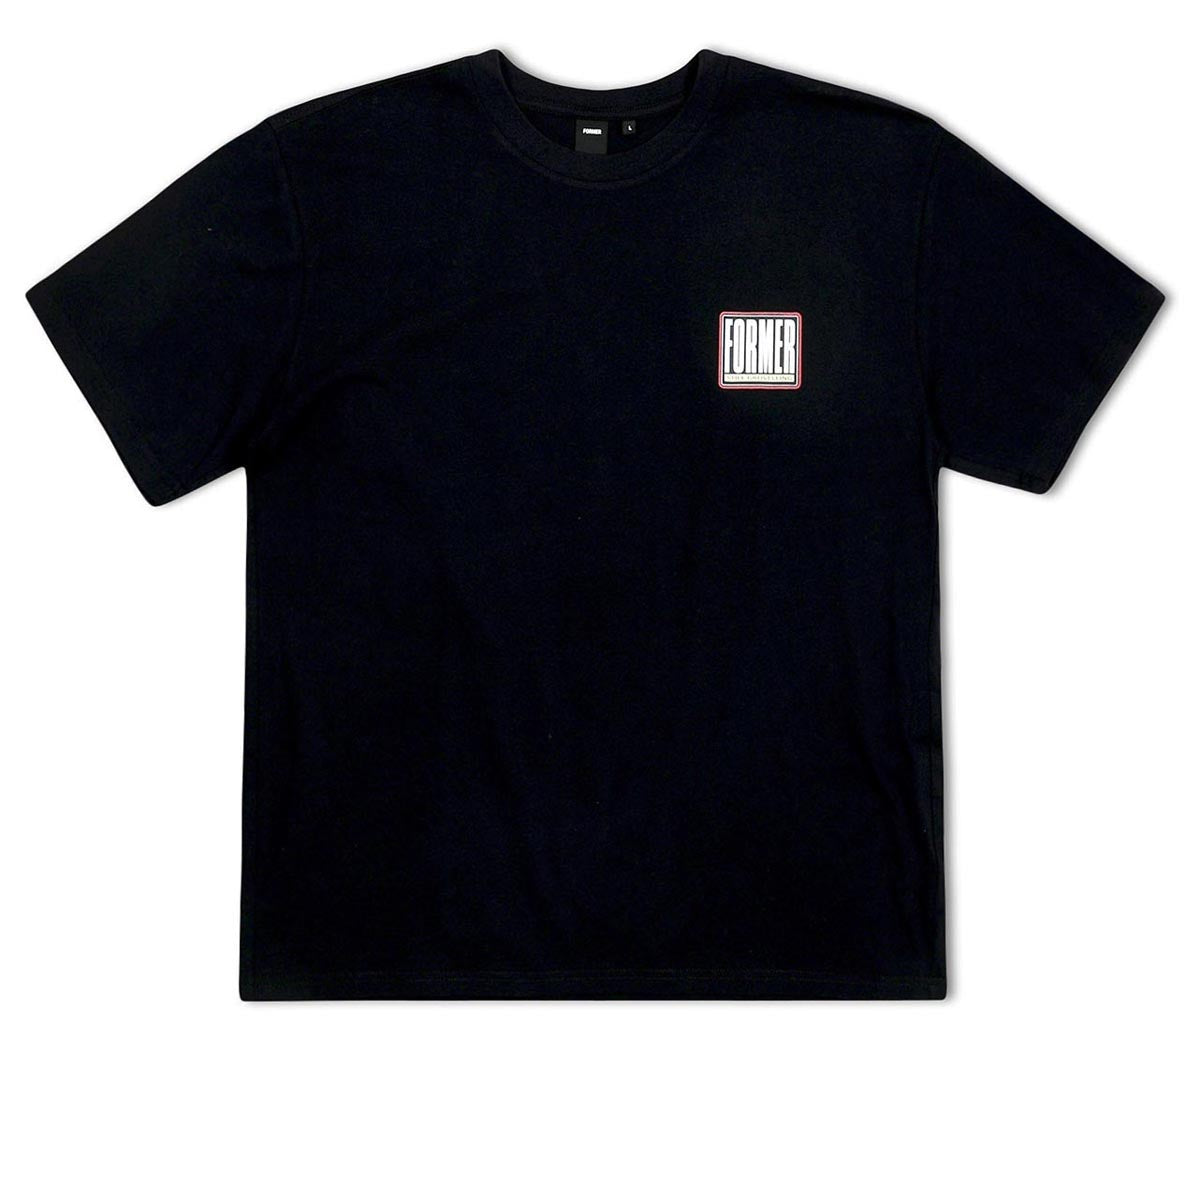 Former Grovel T-Shirt - Black image 1